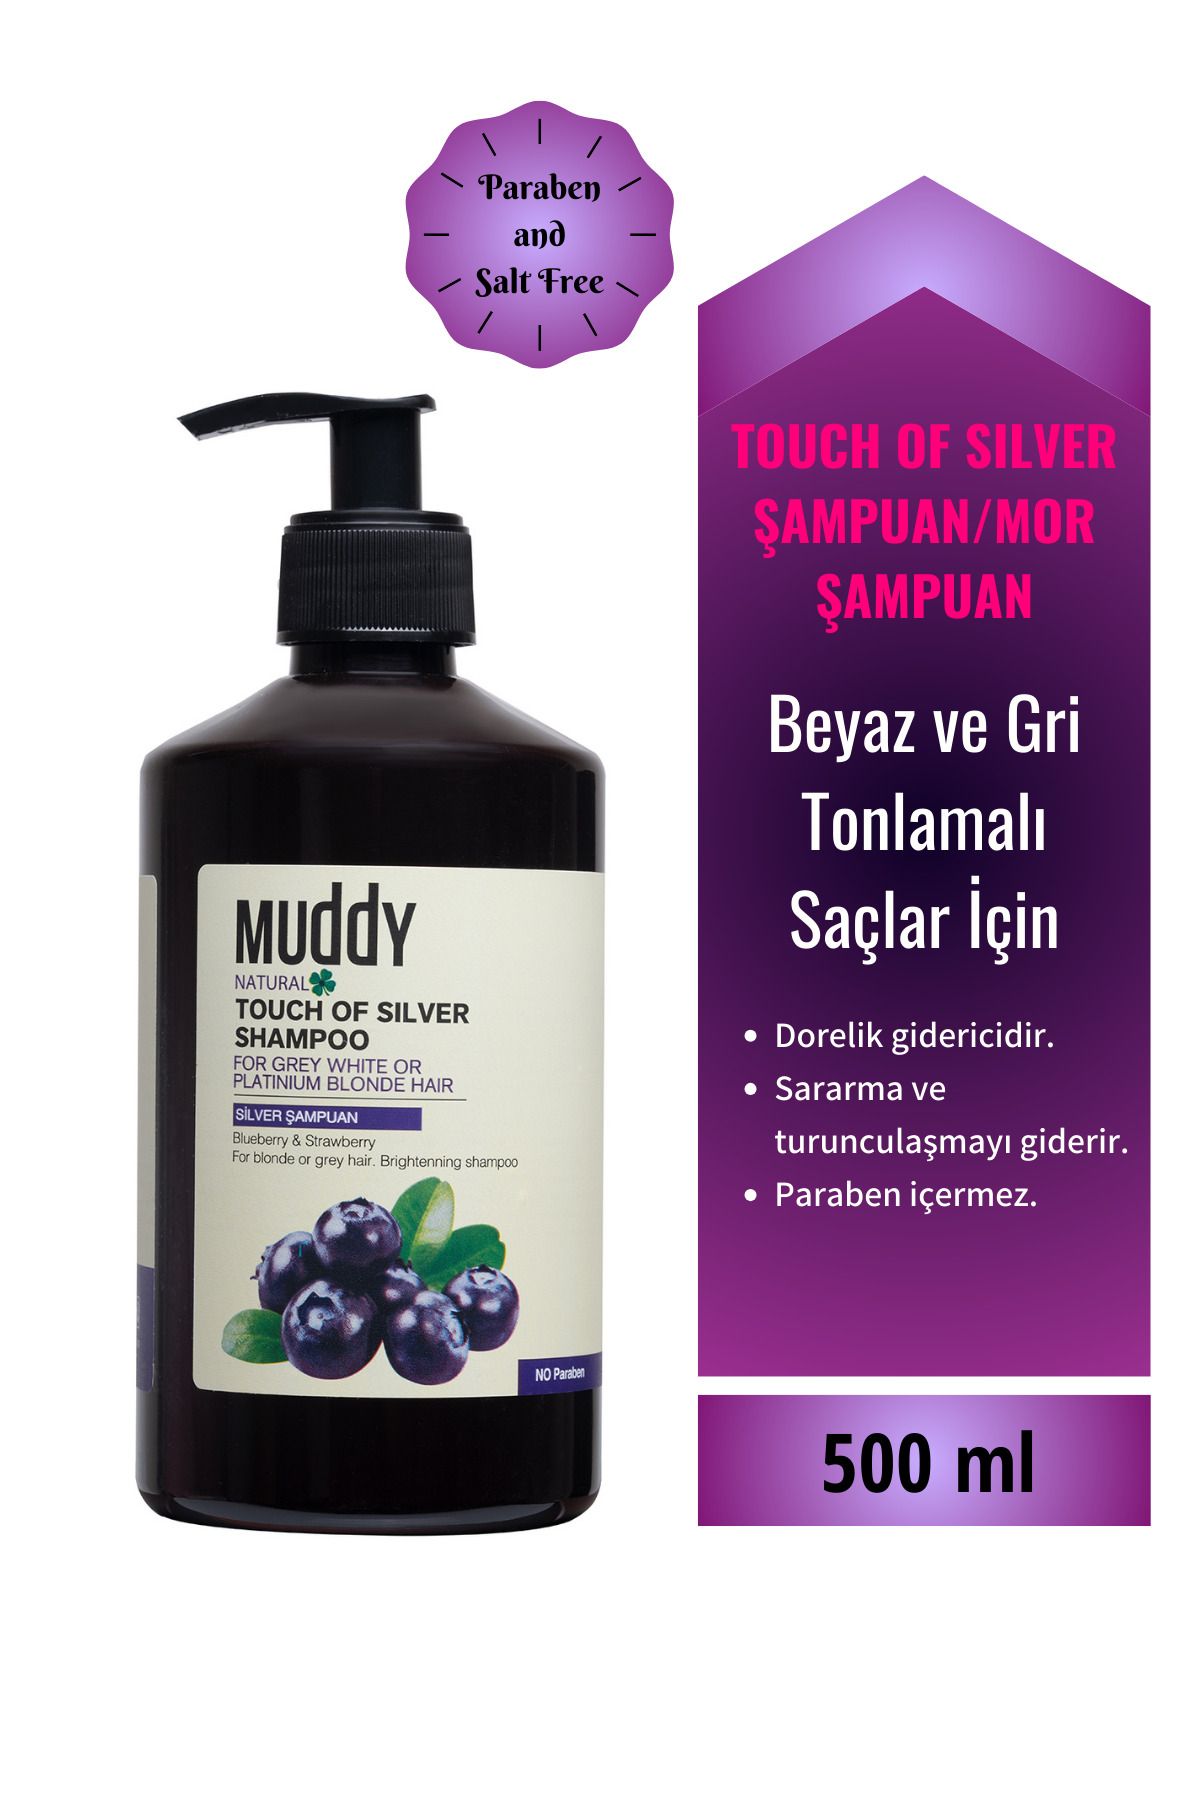 Muddy Turunculaşma Sararma Dorelik Karşıtı Silver Şampuan/mor Şampuan 500 ml